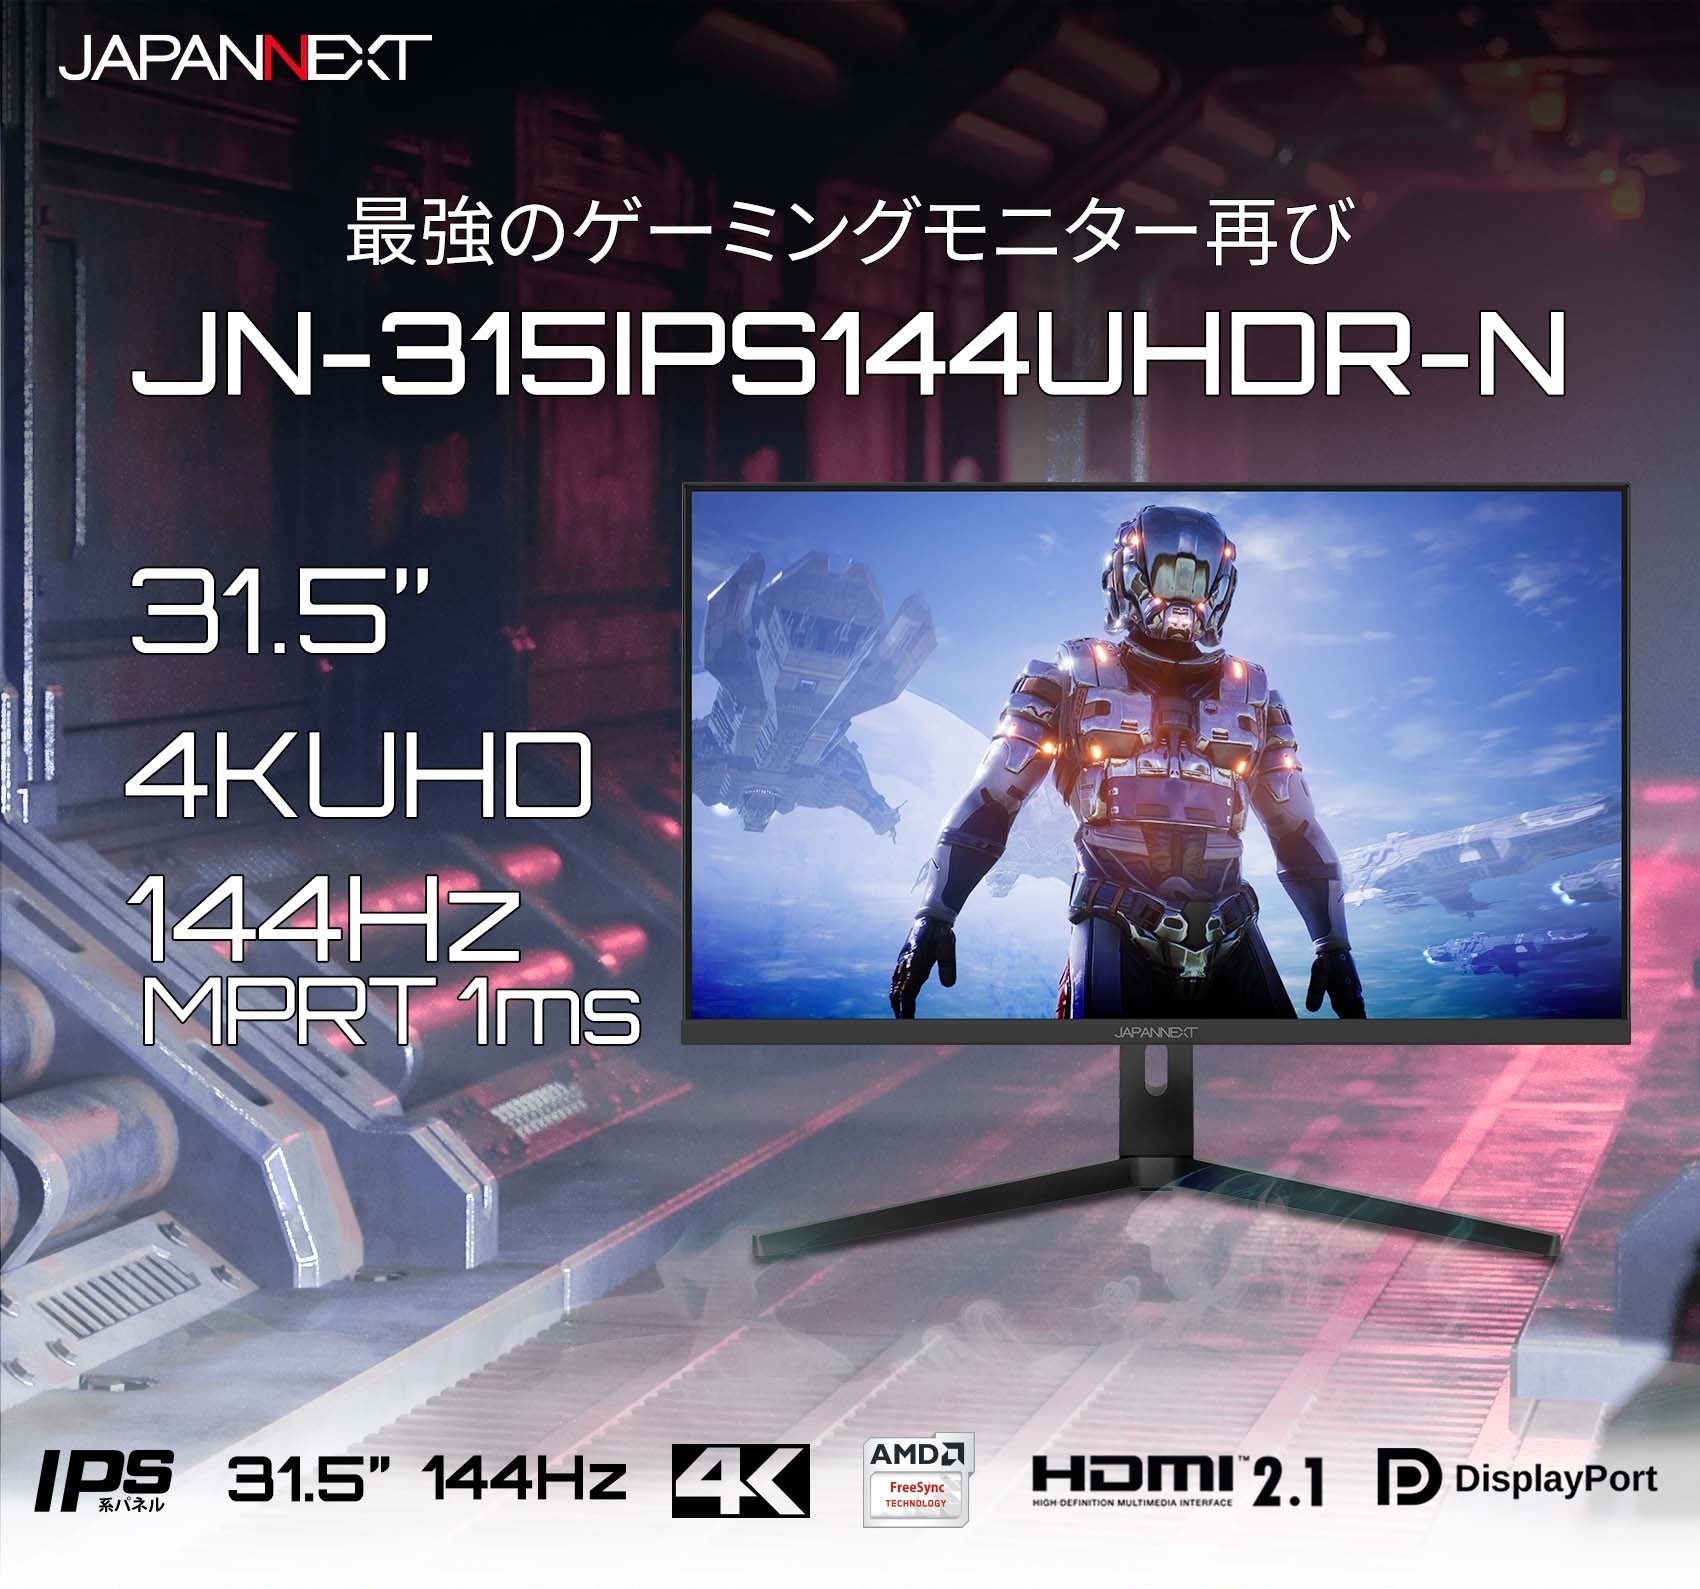 HDMI 2.1対応 31.5型 144Hz対応４Kゲーミングモニター